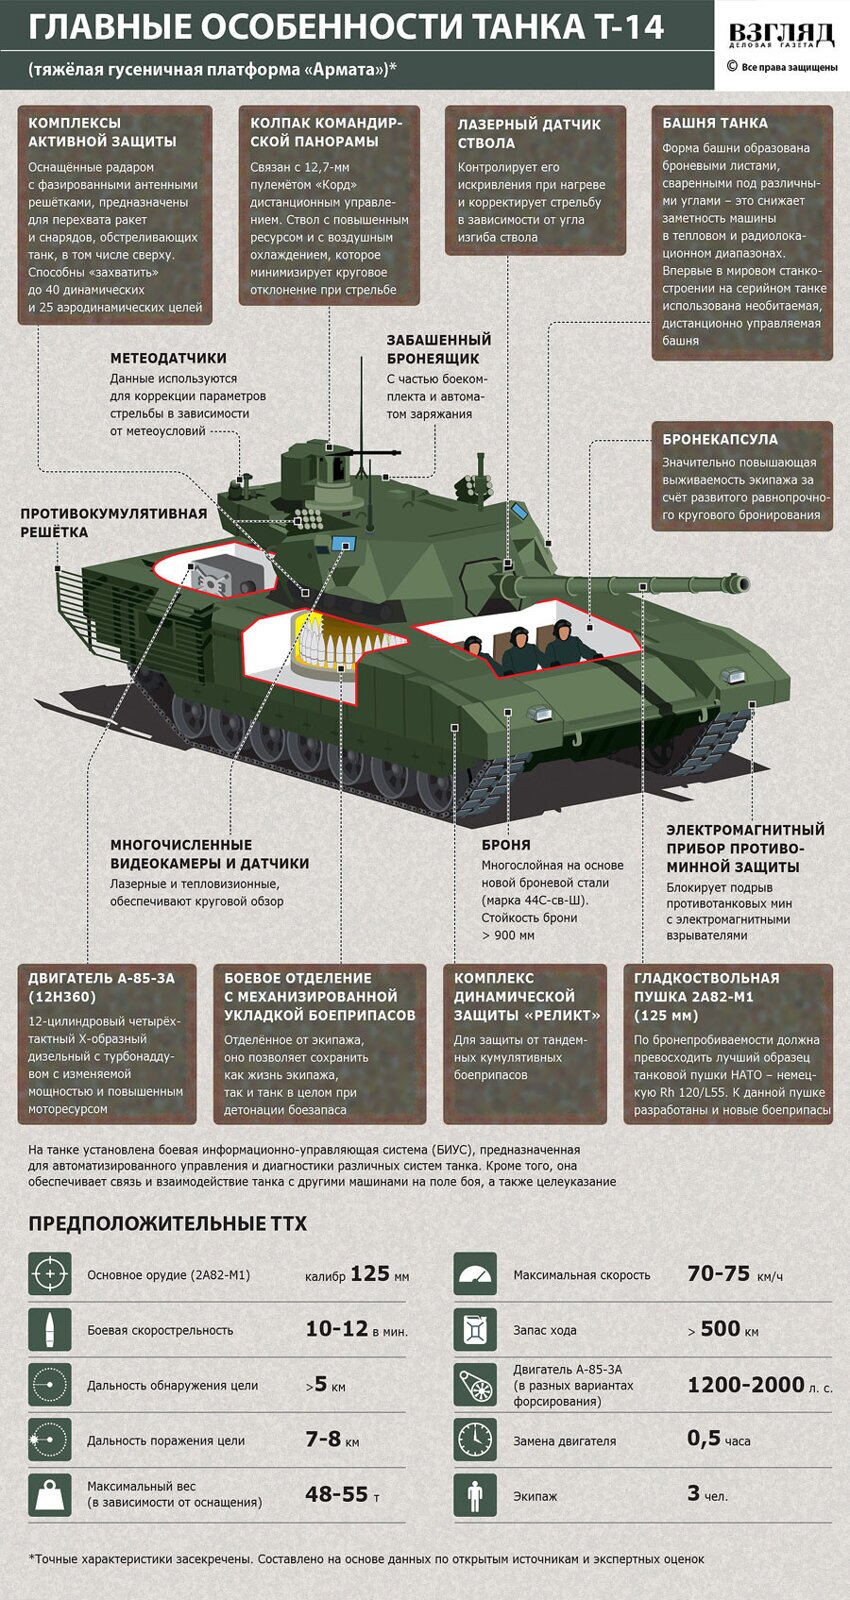 Главные особенности танка Т-14